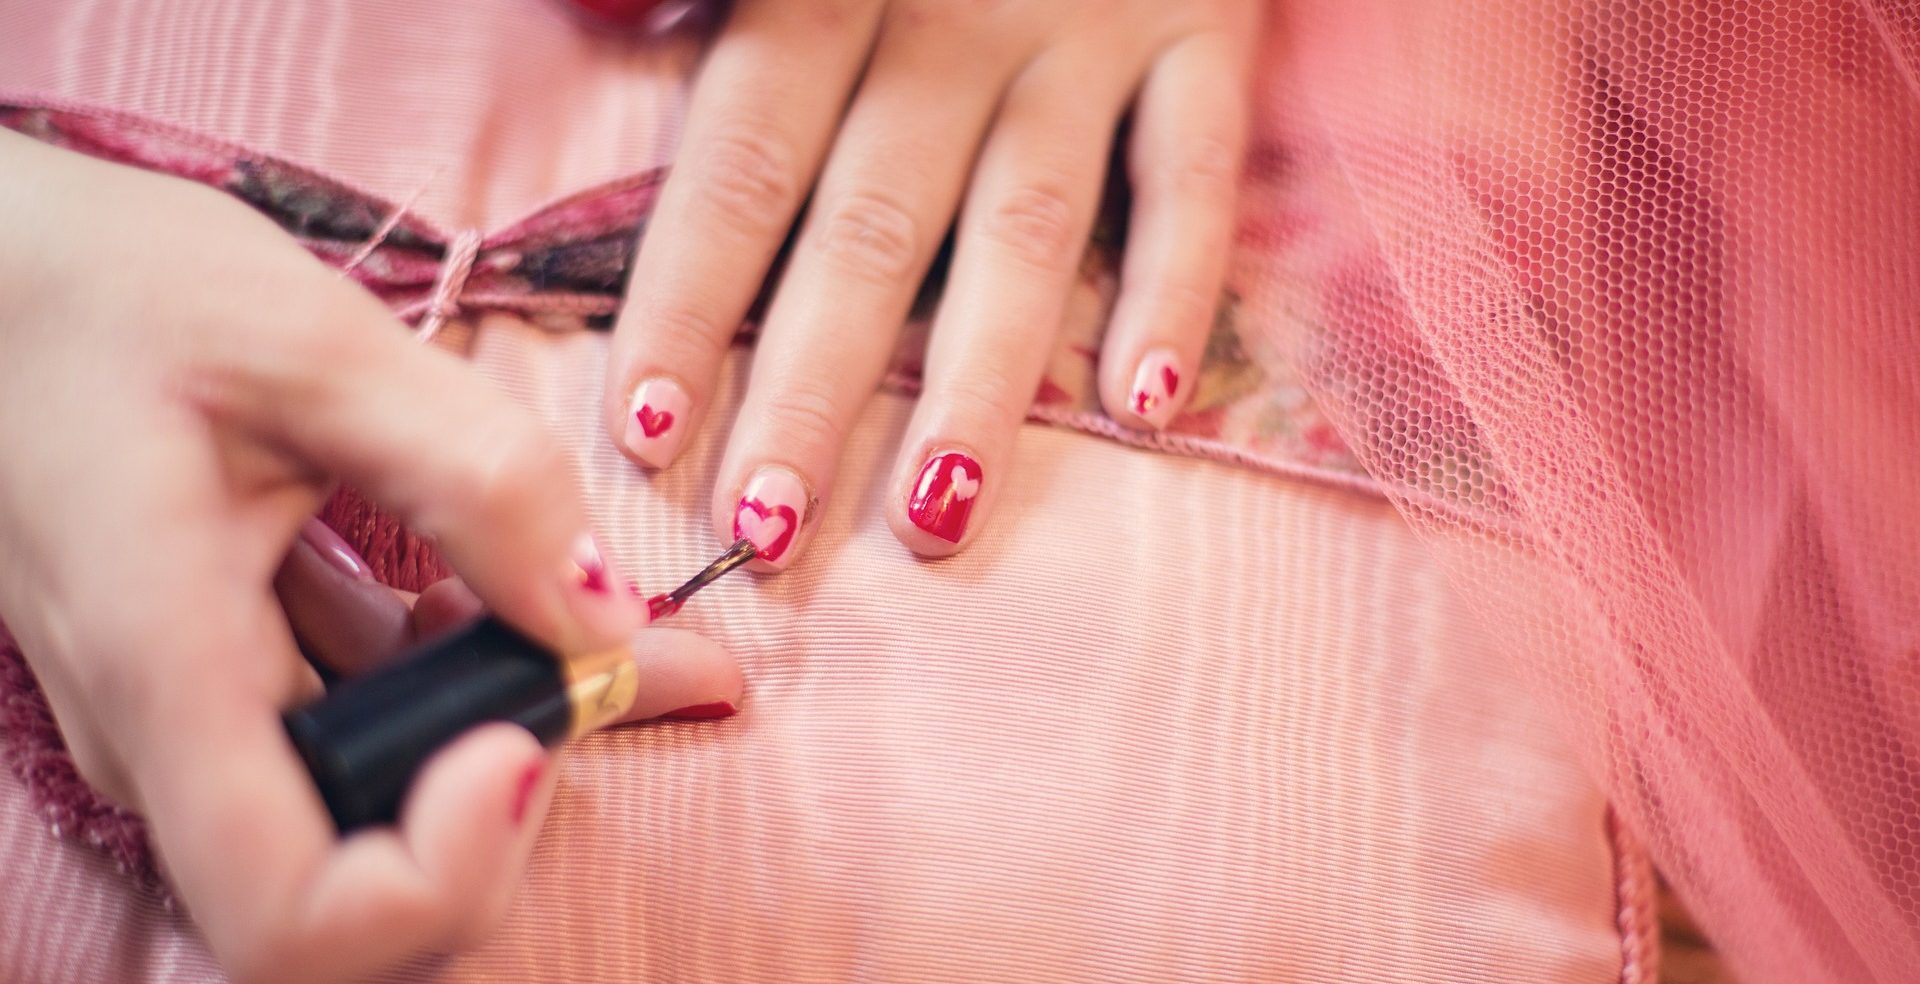 immagine di unghie dipinte con un cuore per san valentino